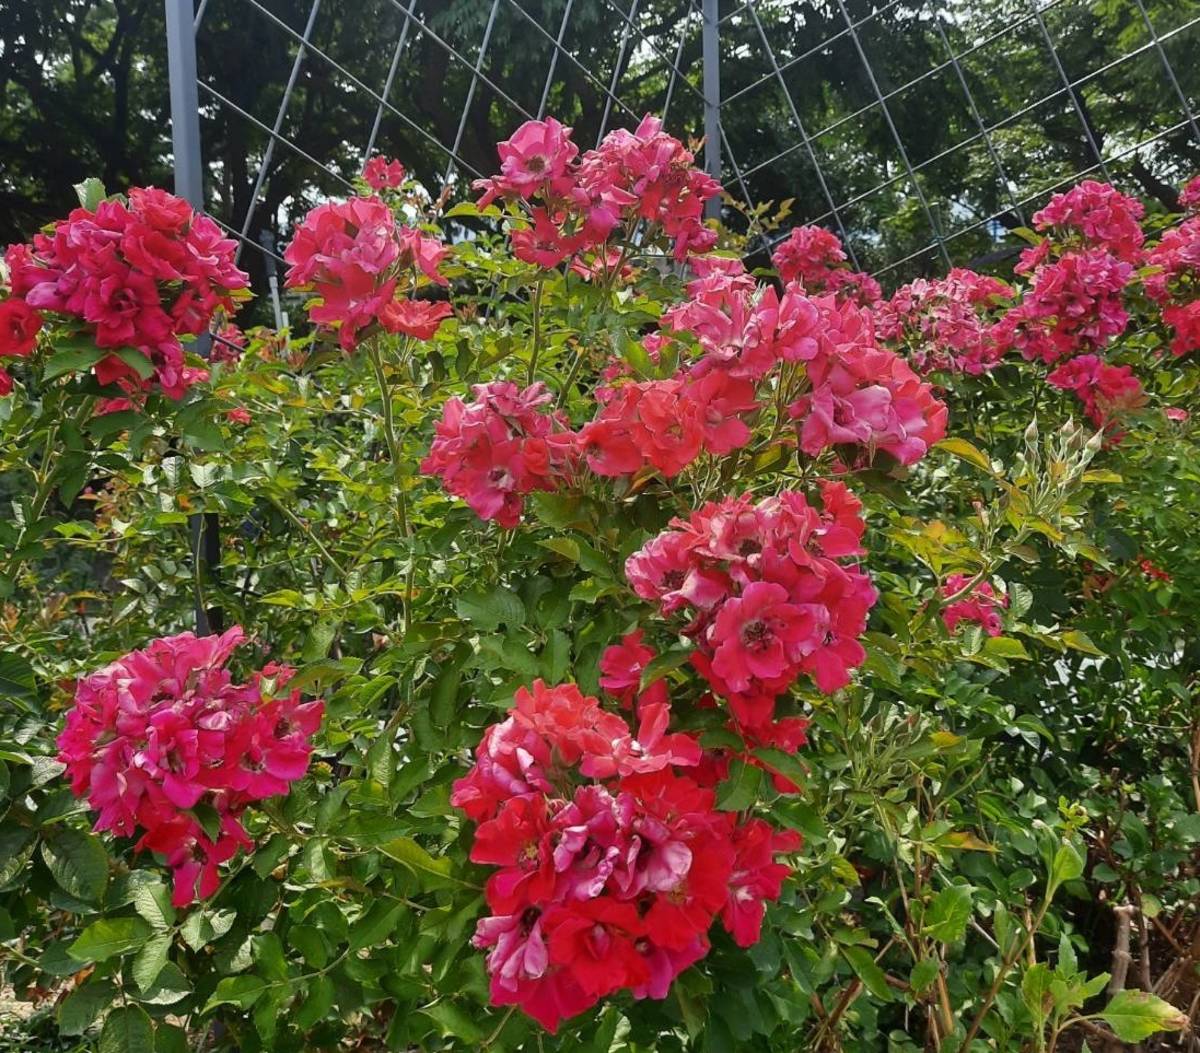 紅色的蔓性玫瑰「琳達坎貝爾」在炎熱的天氣時依然茂密